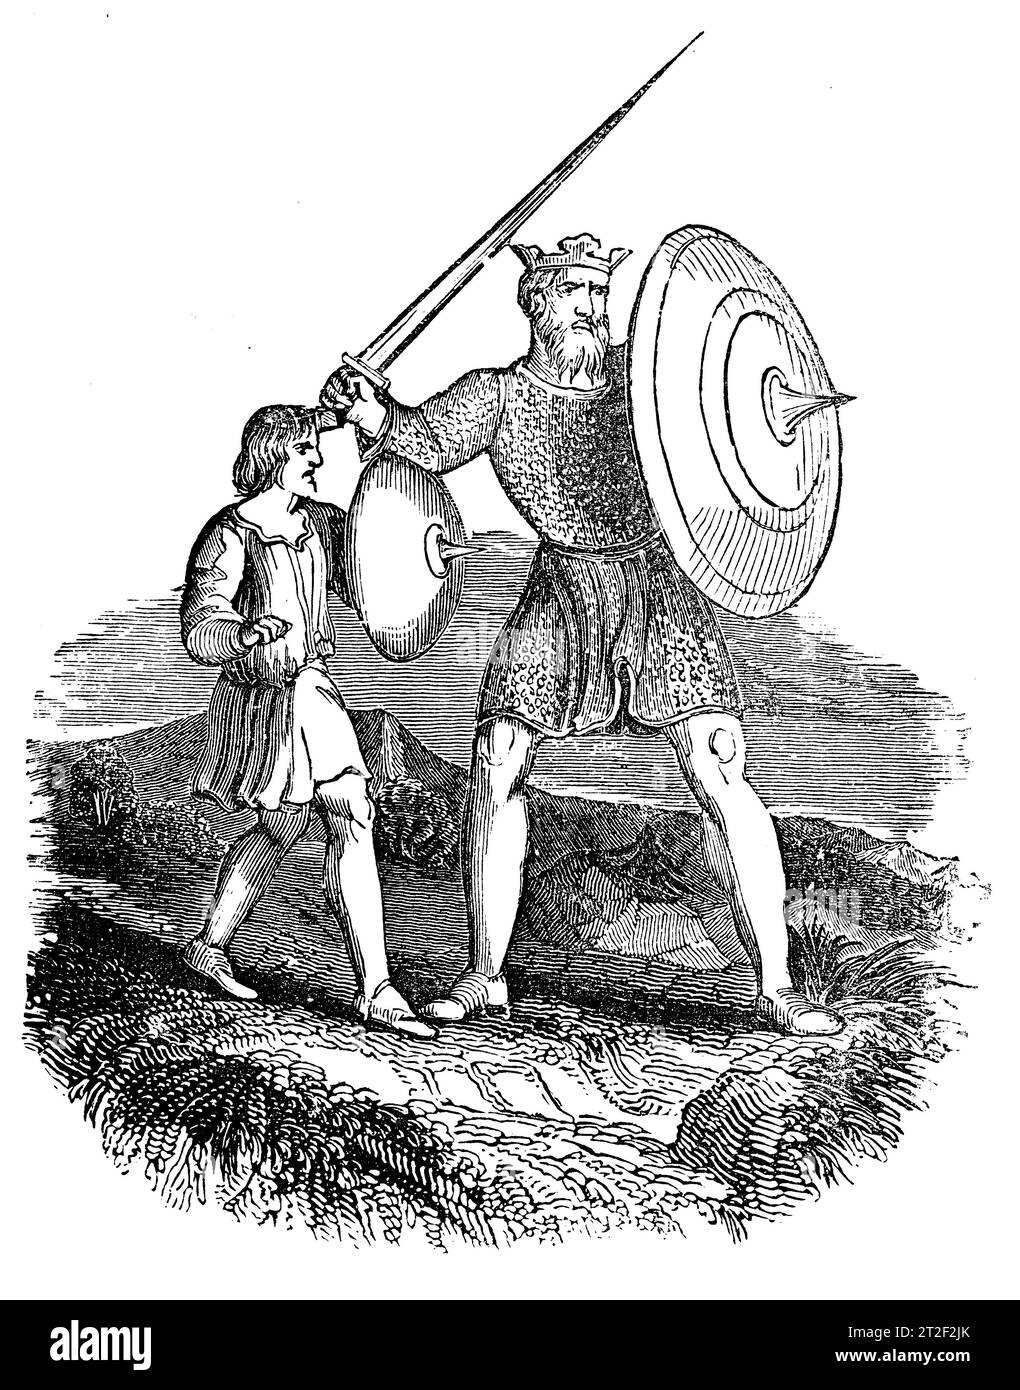 Armas y Cosyume de un rey anglosajón y portador de armas. Ilustración en blanco y negro de la 'Vieja Inglaterra' publicada por James Sangster en 1860. Foto de stock